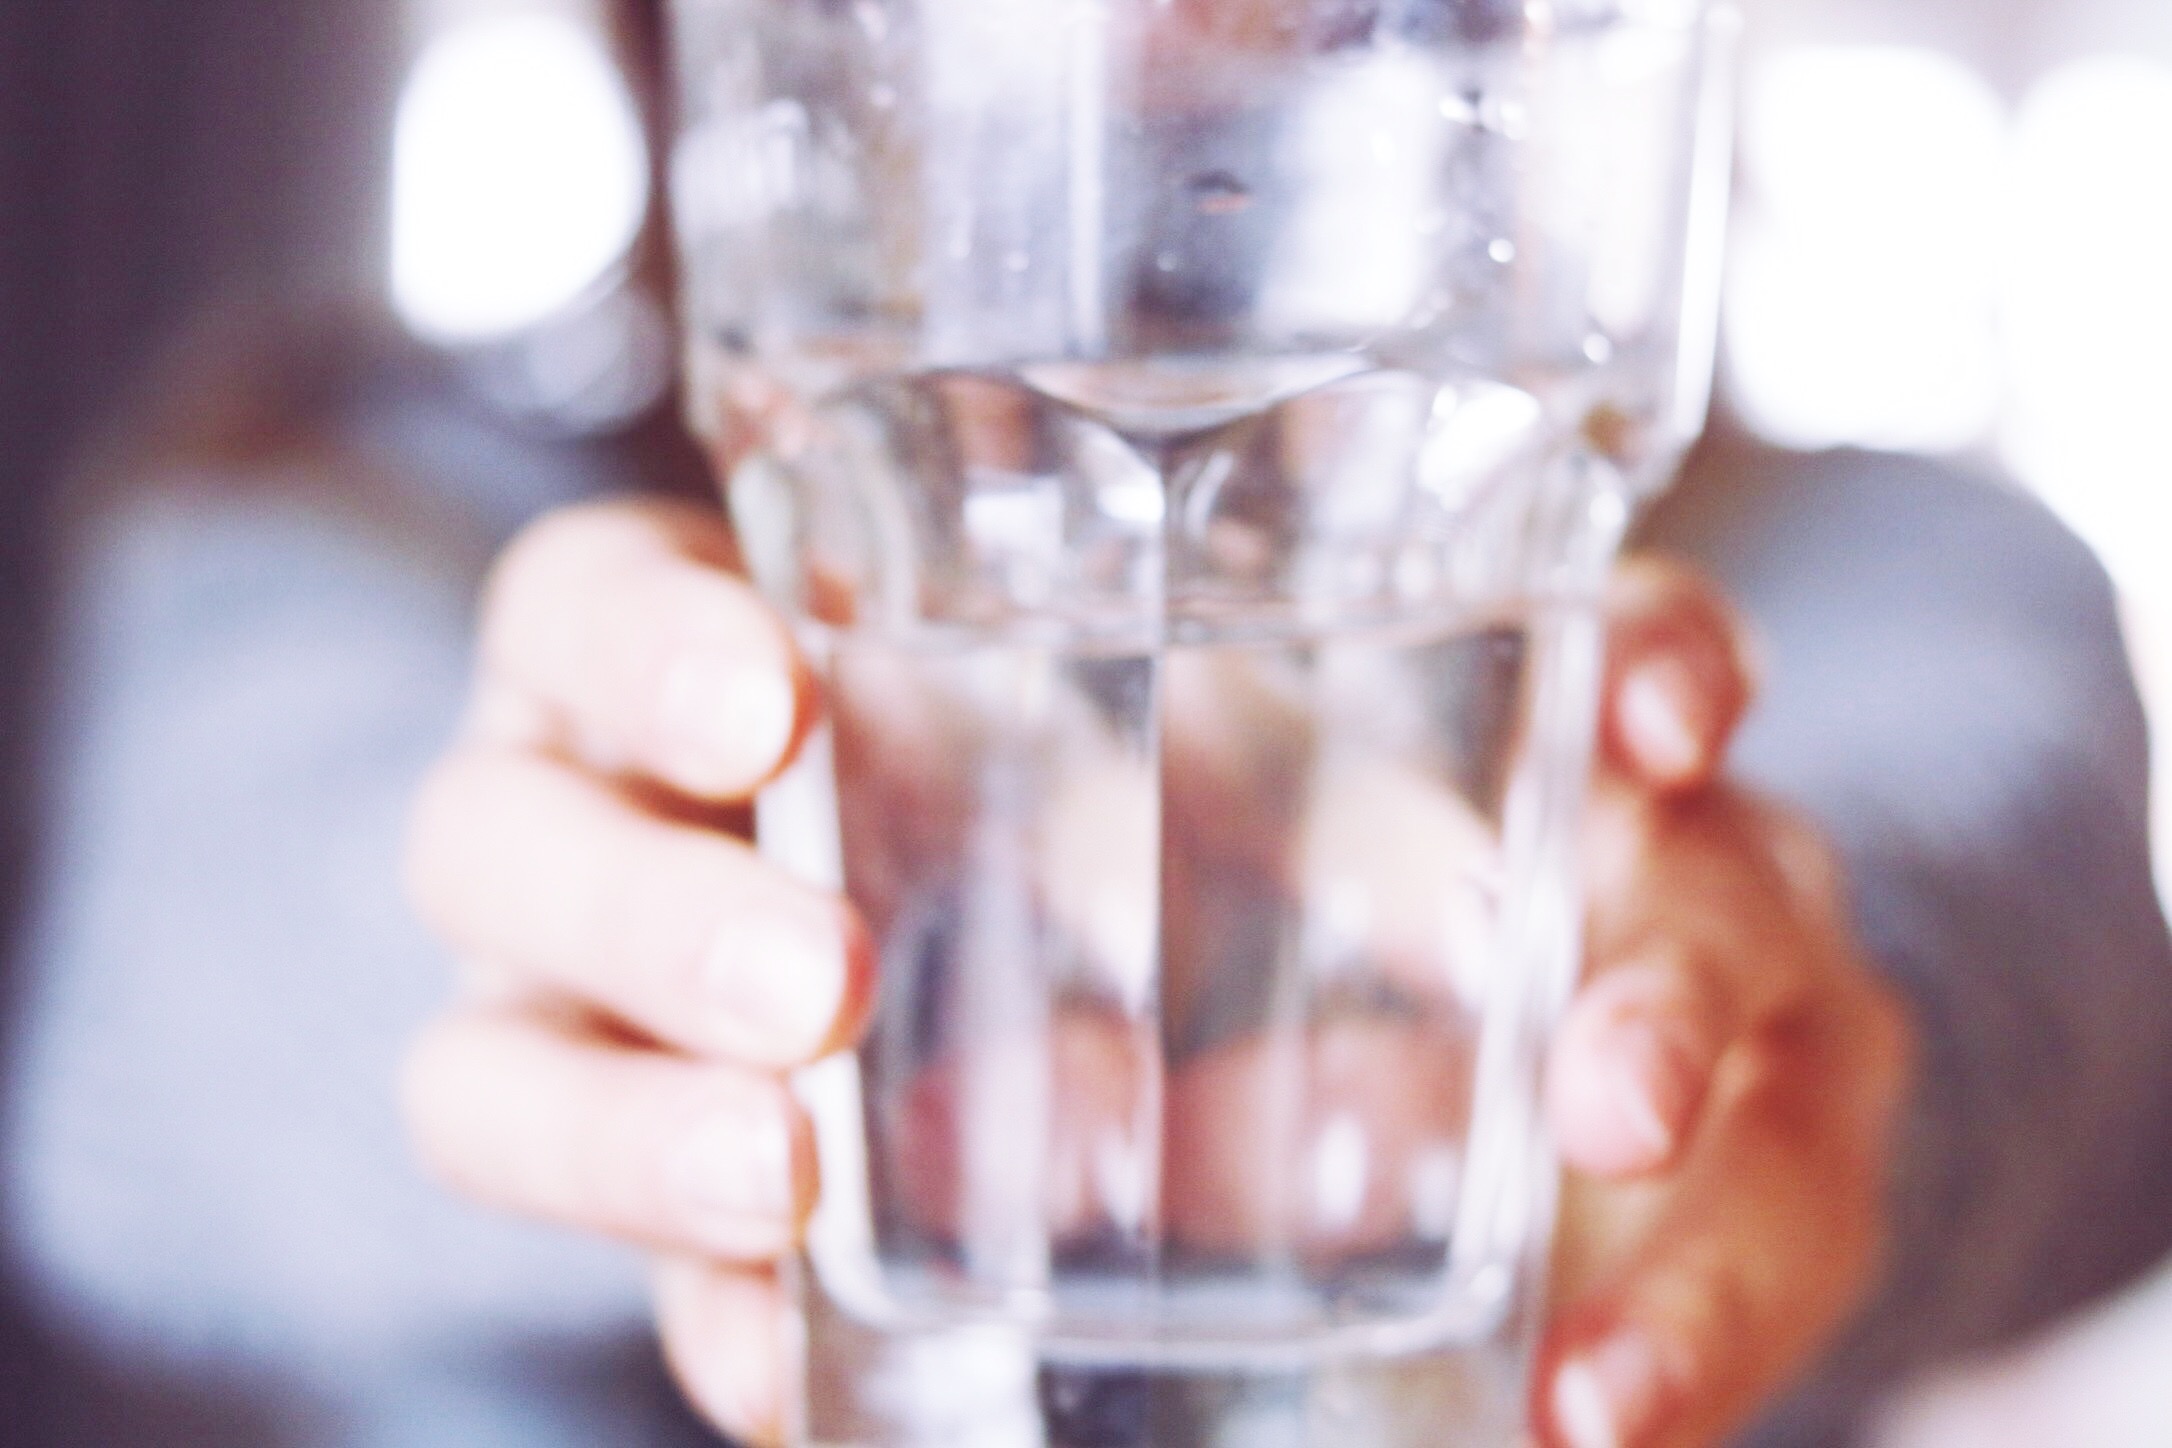 waterchallenge désintox purifier eau thereseandthekids santé